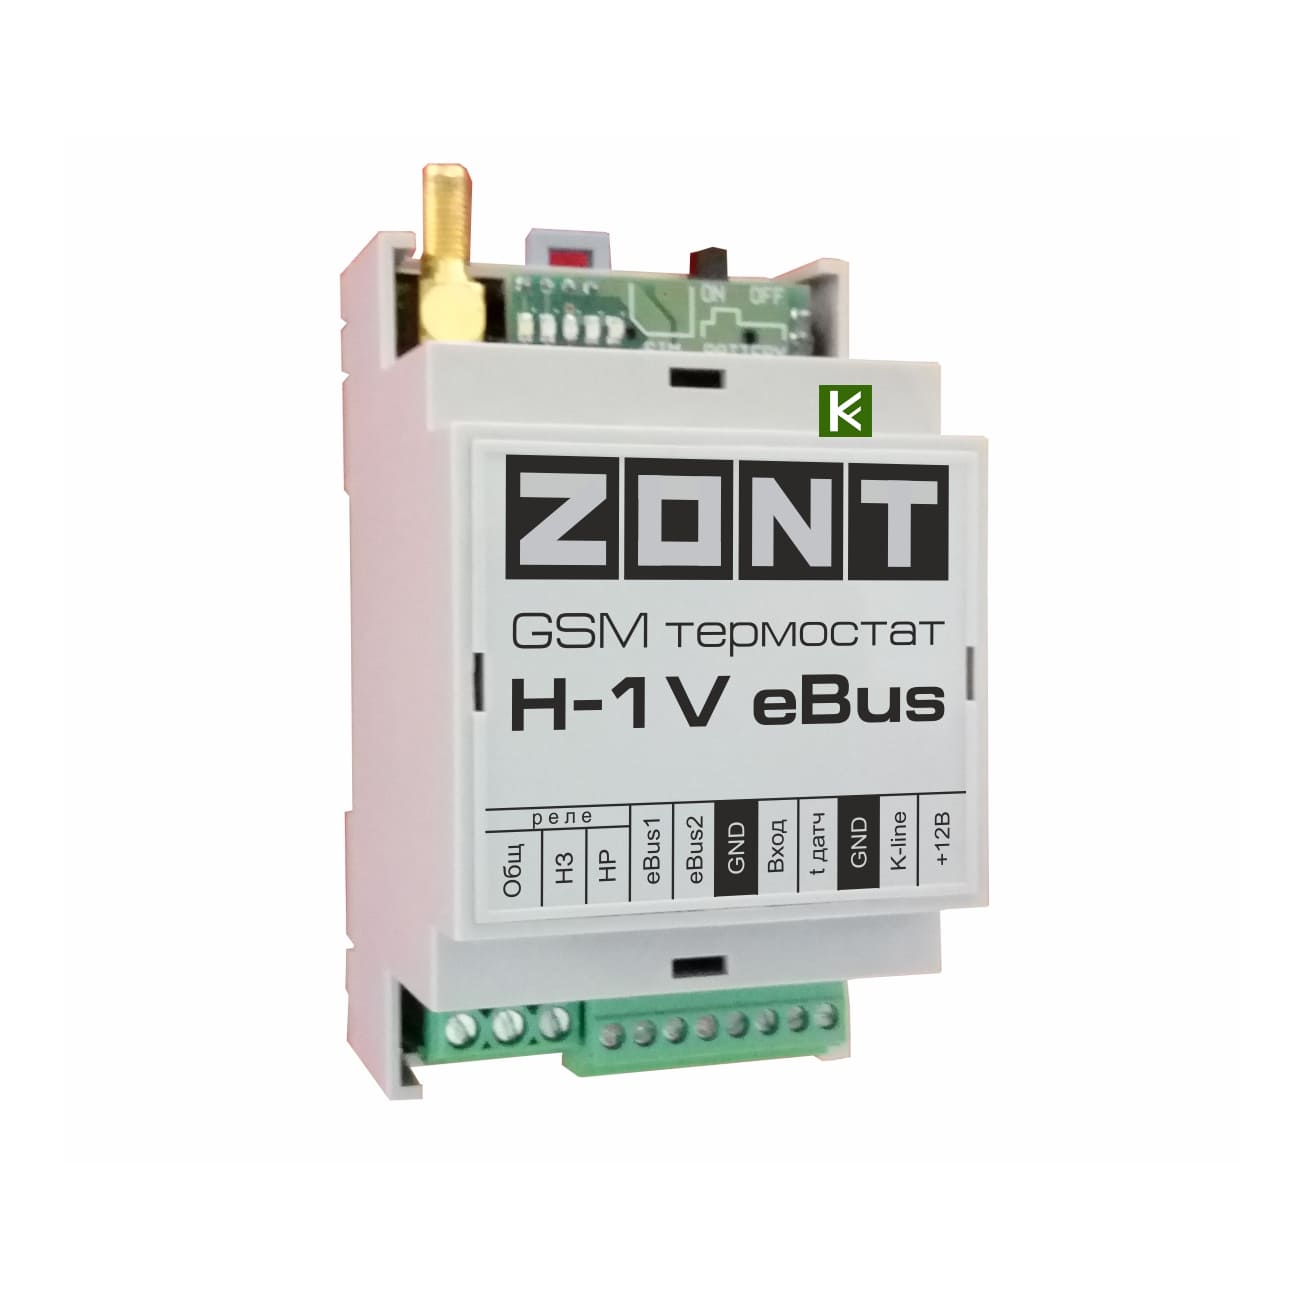 Блок zont. Zont-h1v EBUS GSM-термостат. Protherm блок дистанционного управления котлом GSM-climate Zont h-1v EBUS. GSM-термостат Zont h-1v. GSM-термостат Zont h-1.